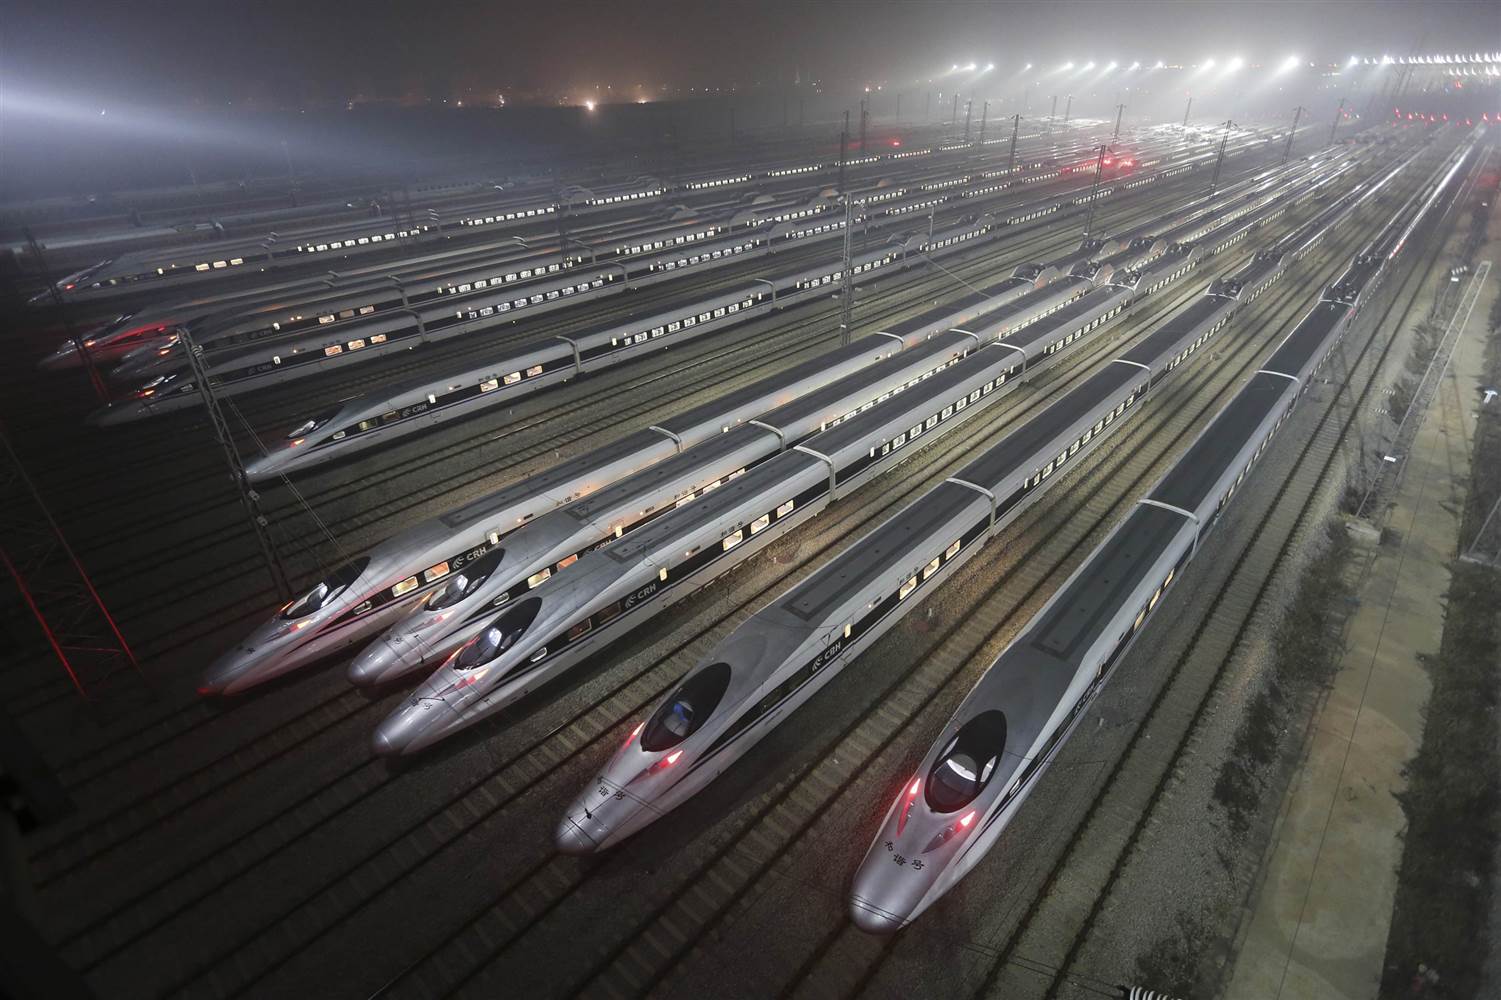 Кина улаже 503 милијарде долара у железнице како би подстакла привредни раст